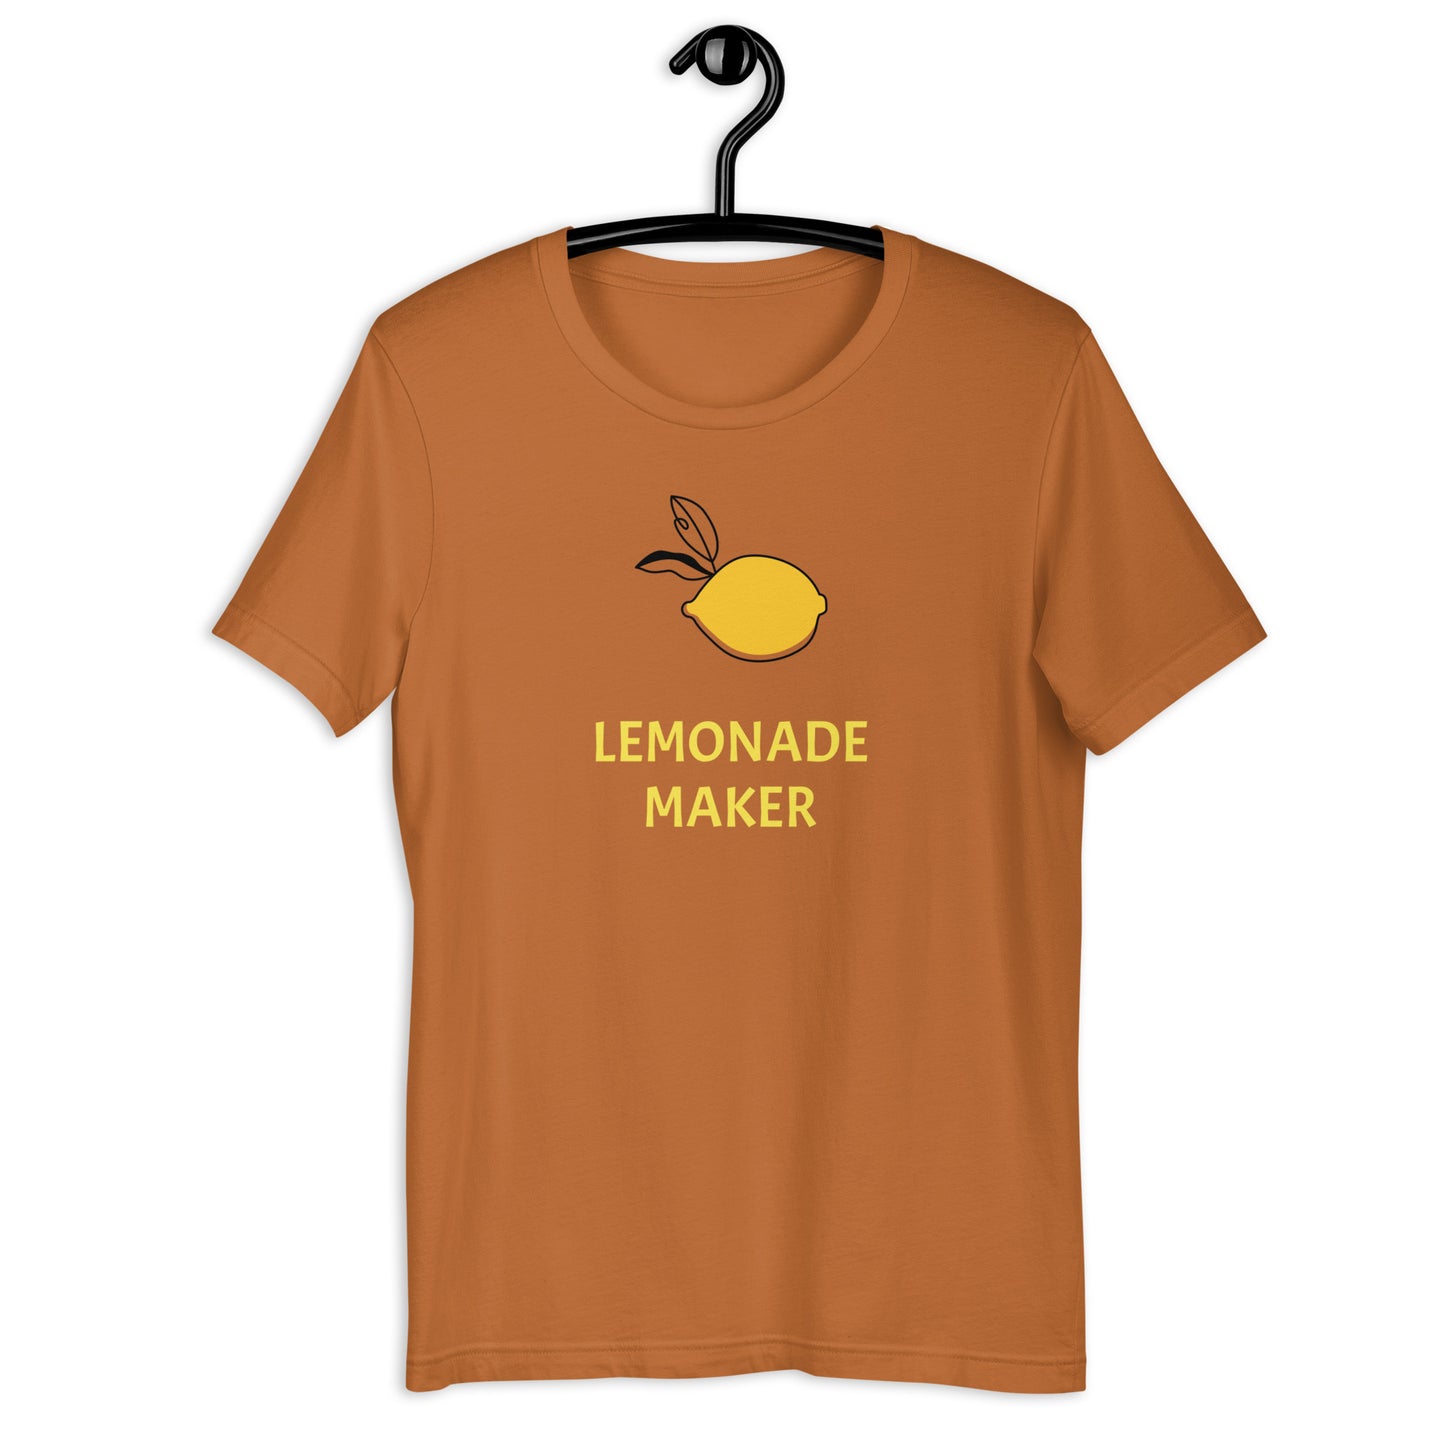 Lemonade Maker unisex t-shirt